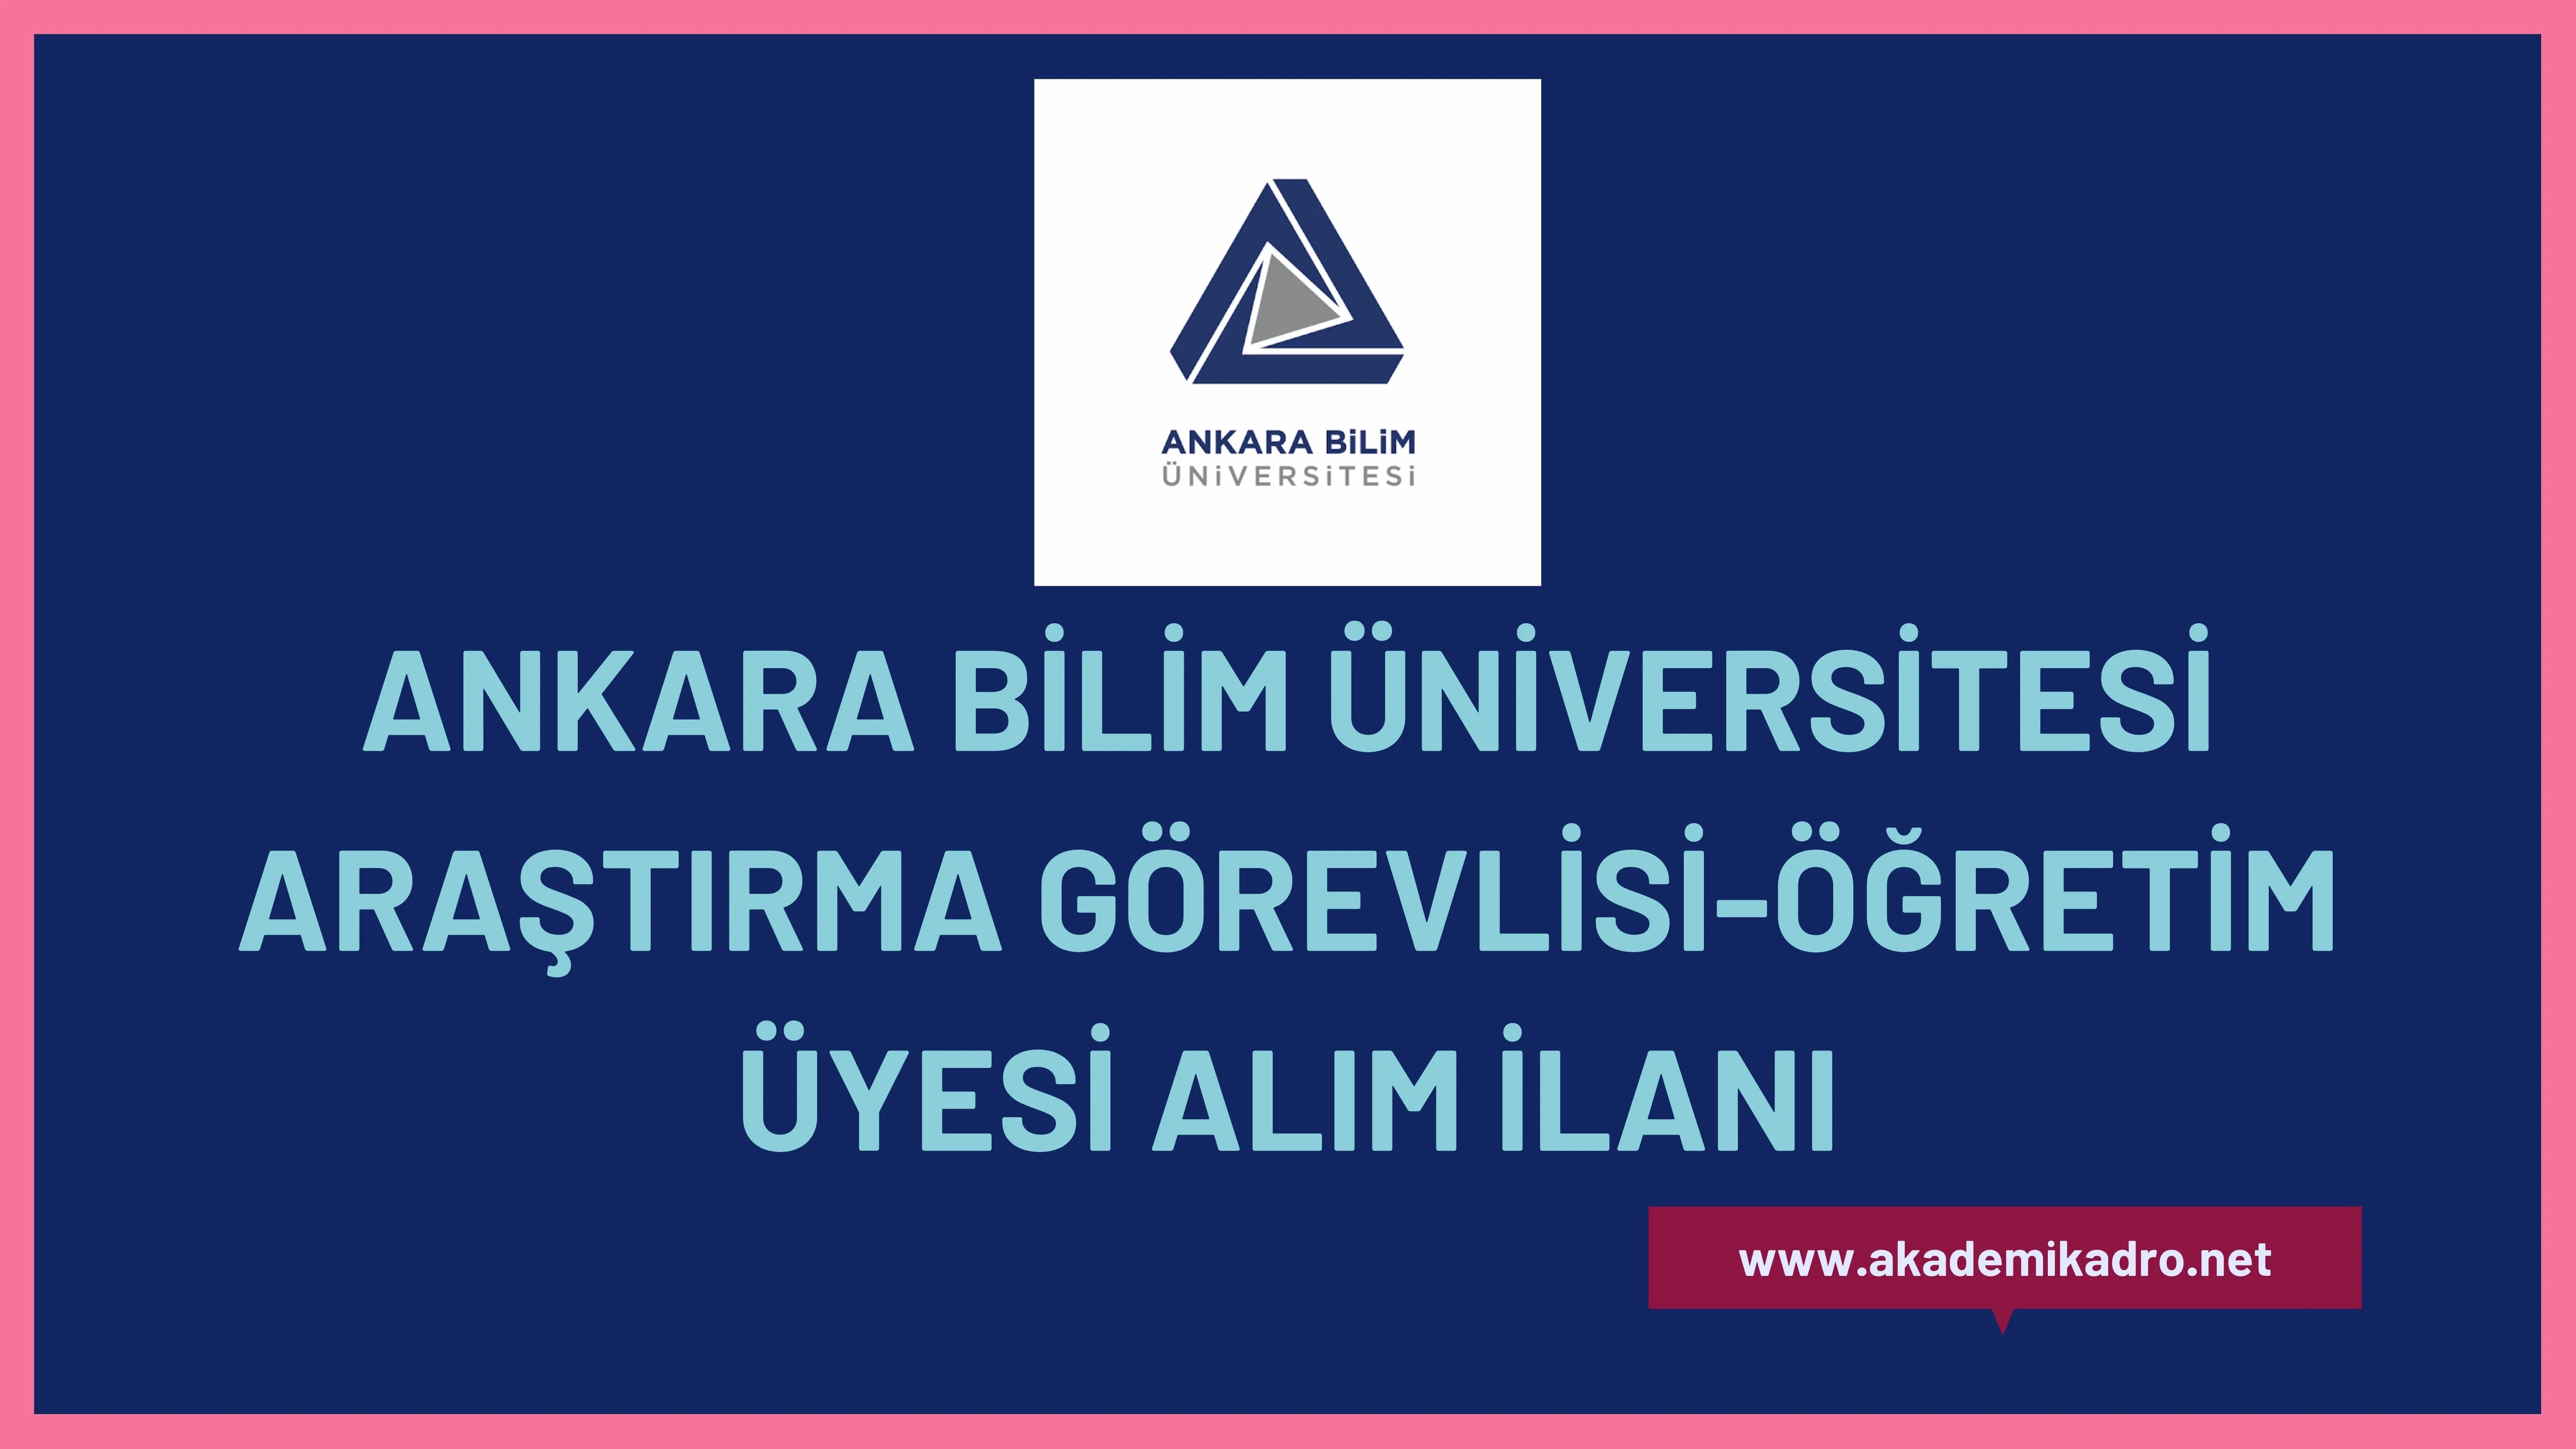 Ankara Bilim Üniversitesi 7 Araştırma görevlisi ve çeşitli branşlarda 12 Öğretim üyesi alacak. Son başvuru tarihi 27 Şubat 2023.